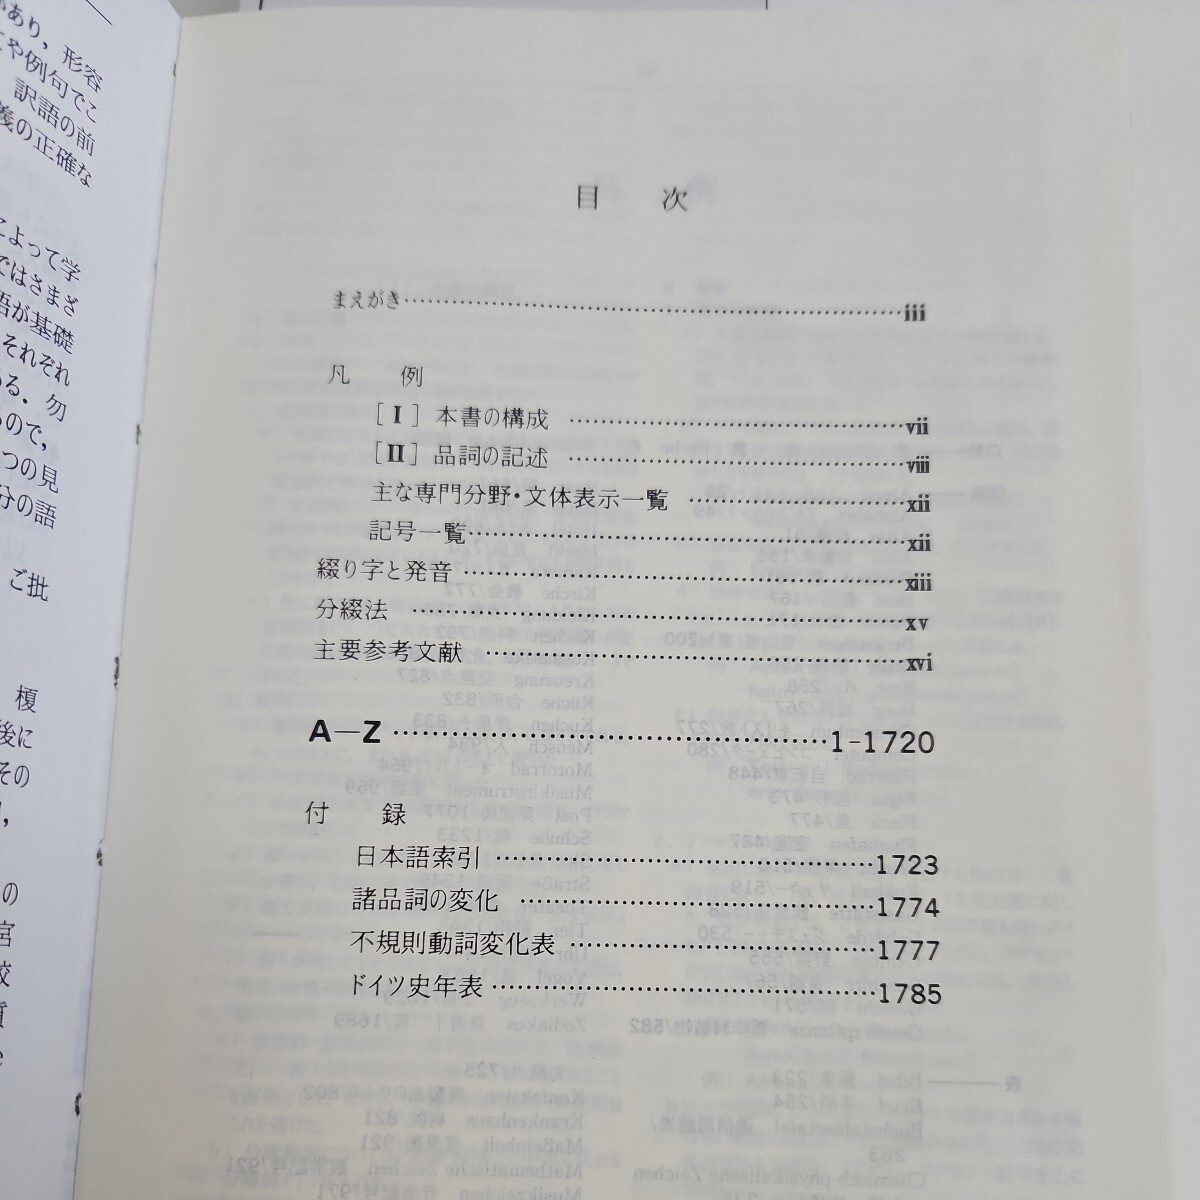 i27-042 MEISTER Deutsch-Japanisches Worterbuch Meister . мир словарь 